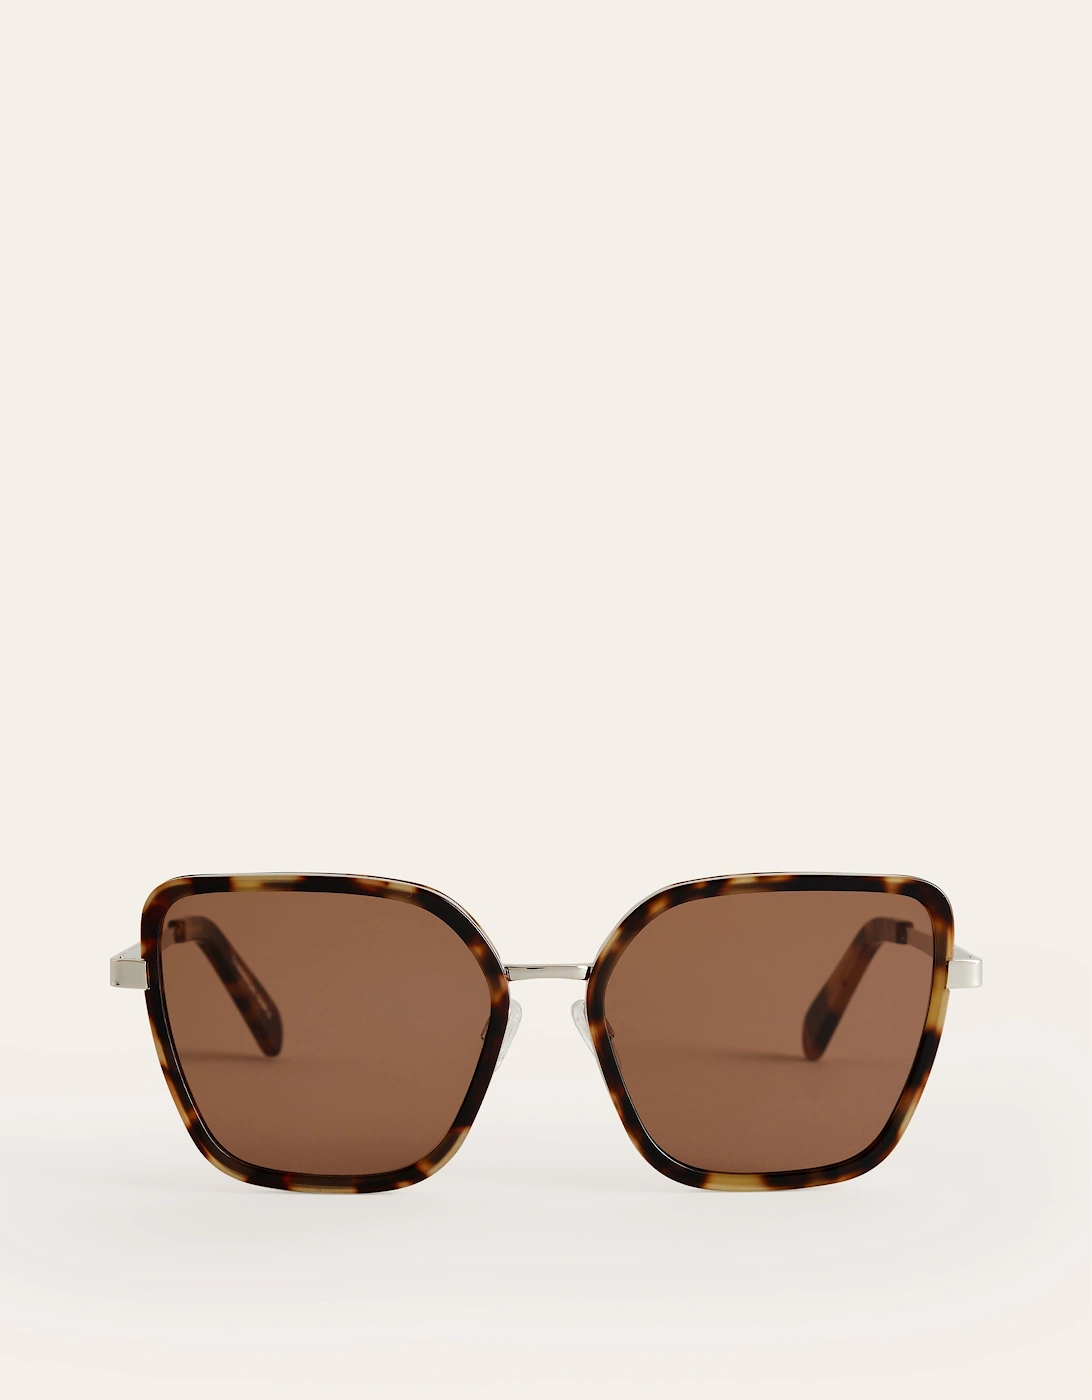 Angular Sunglasses, 2 of 1